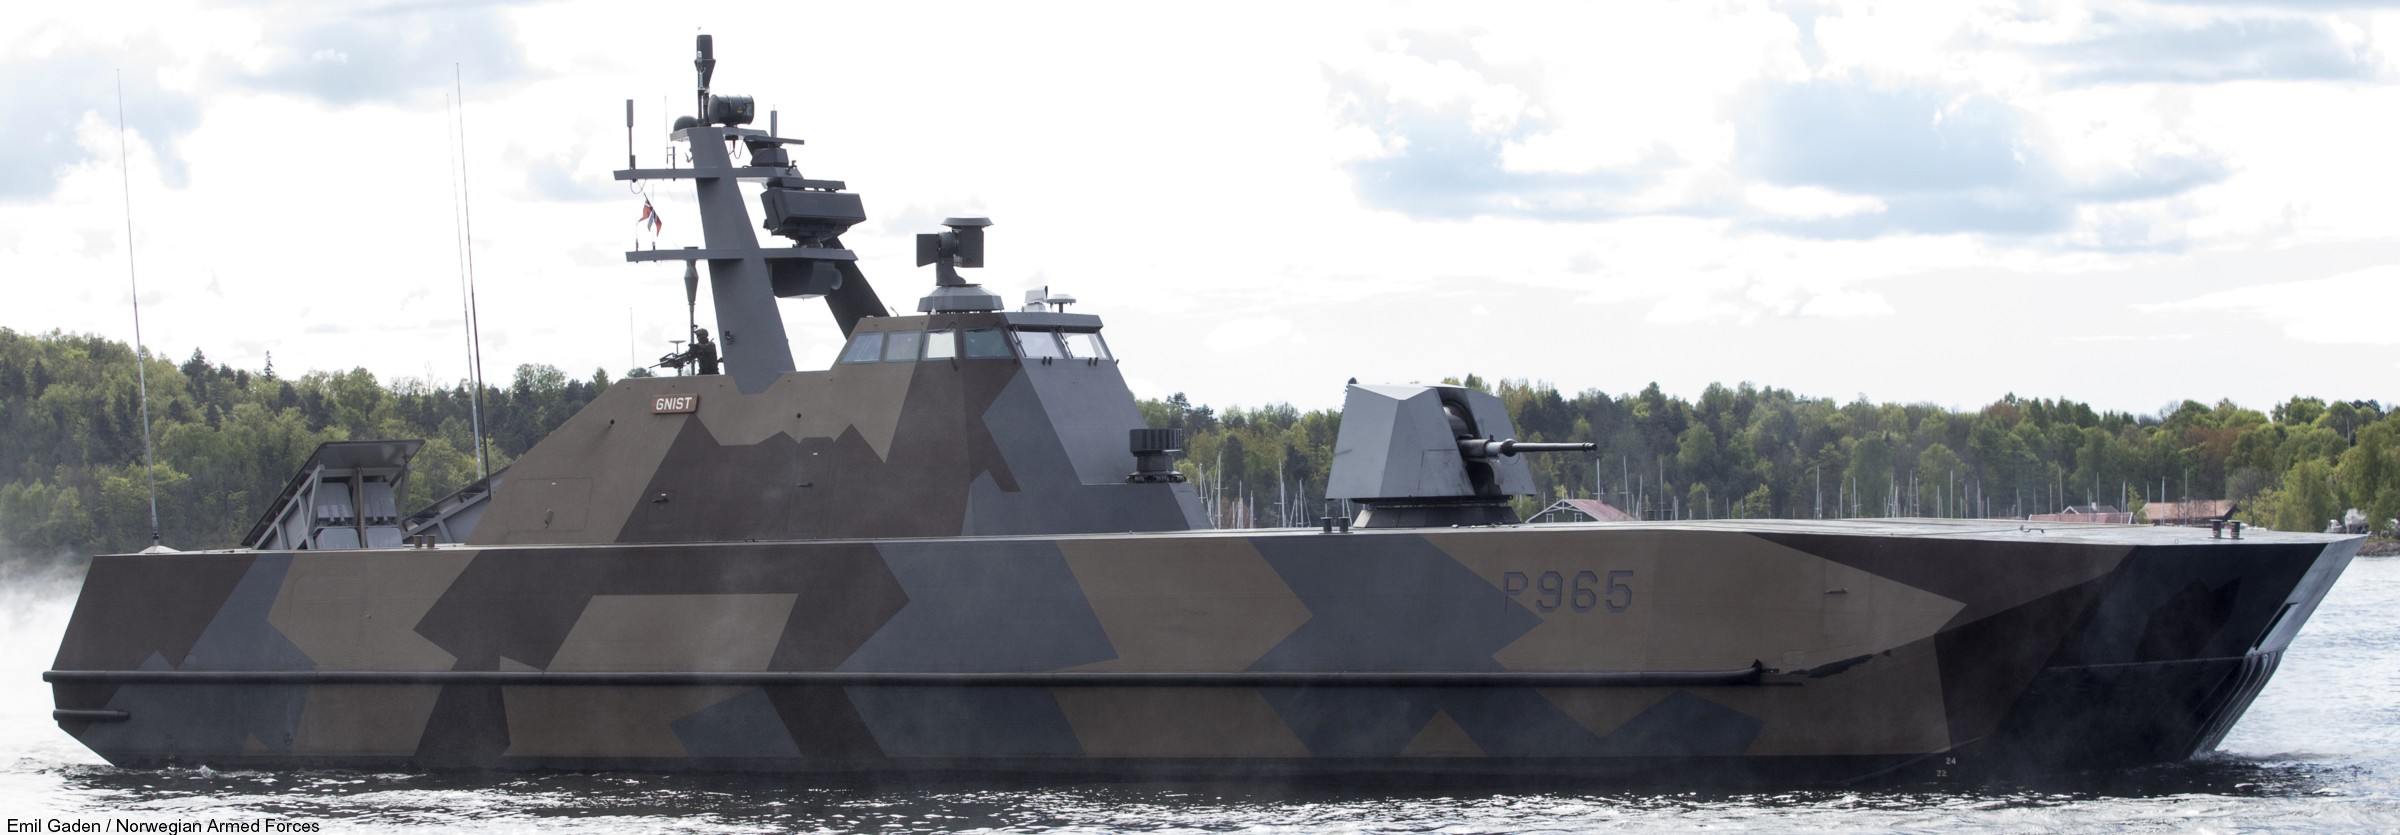 p-965 gnist knm hnoms skjold class corvette royal norwegian navy sjoforsvaret 08